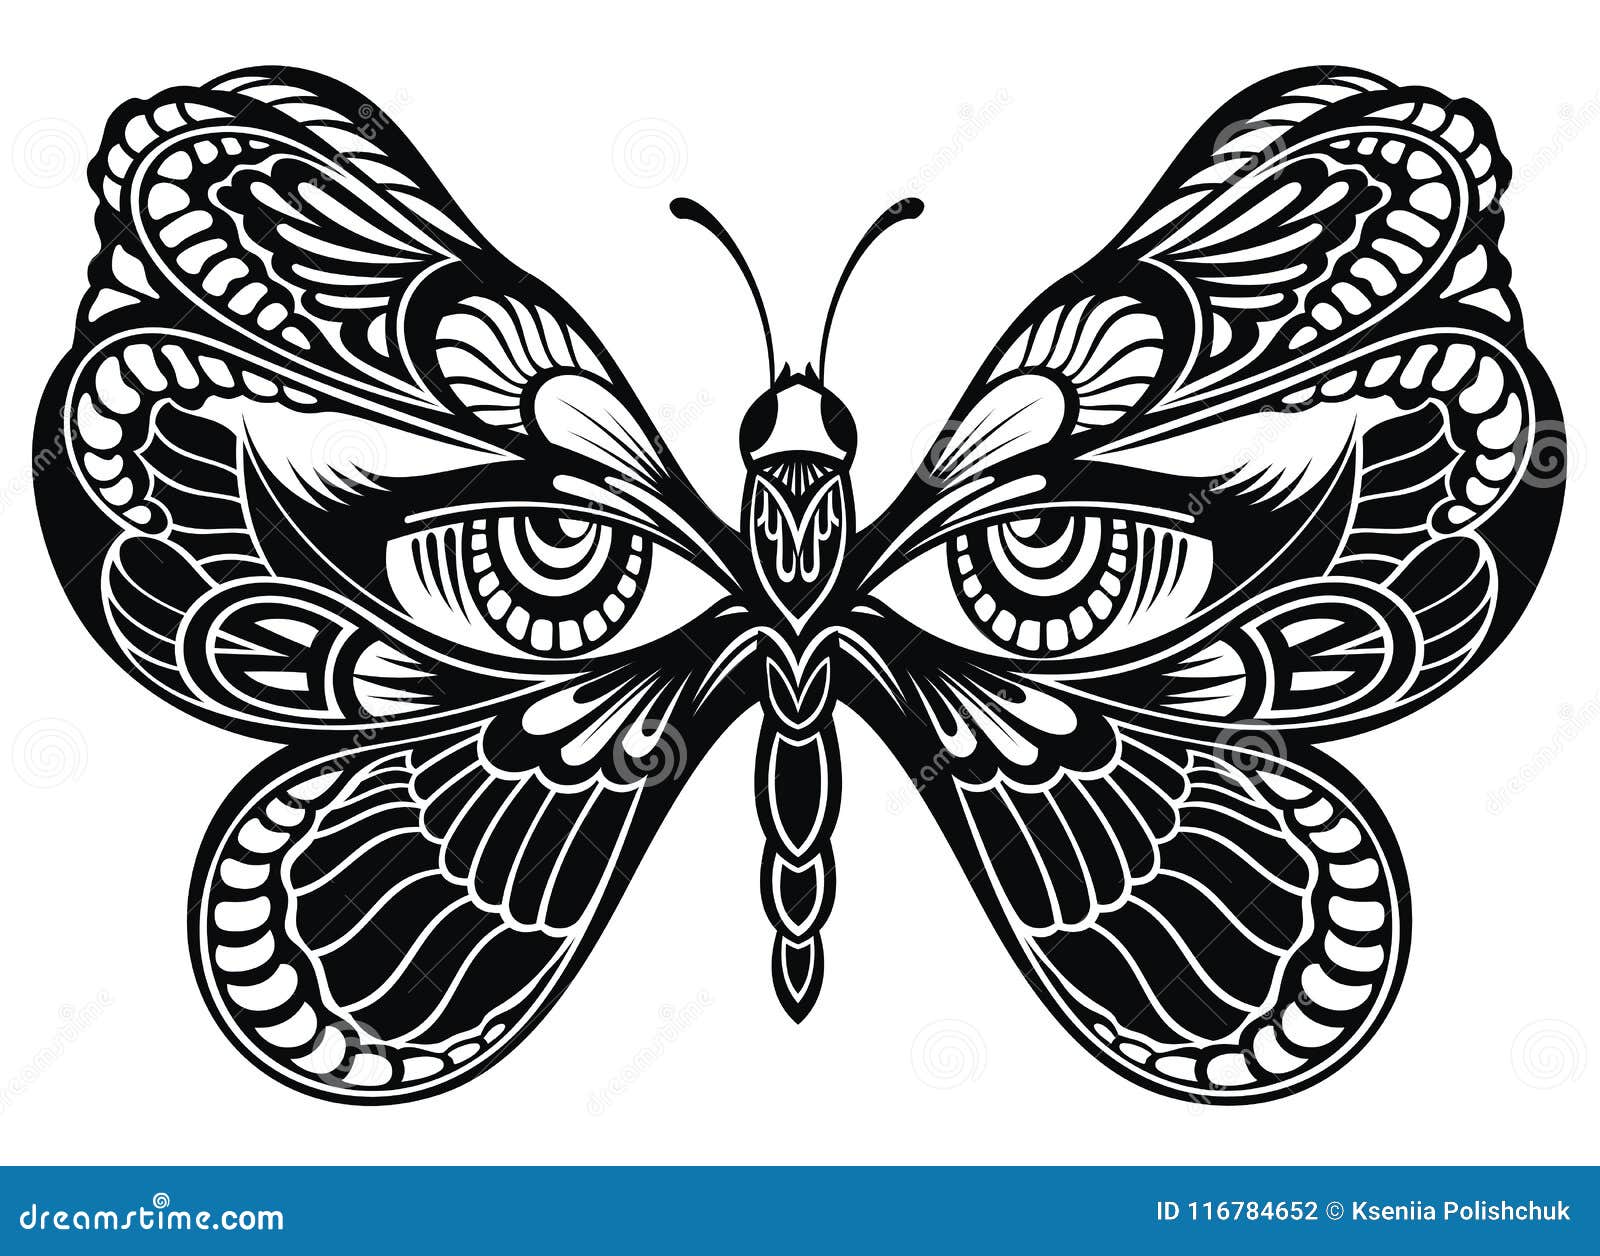 Las alas de la mariposa  ¿Casualidad o diseño?